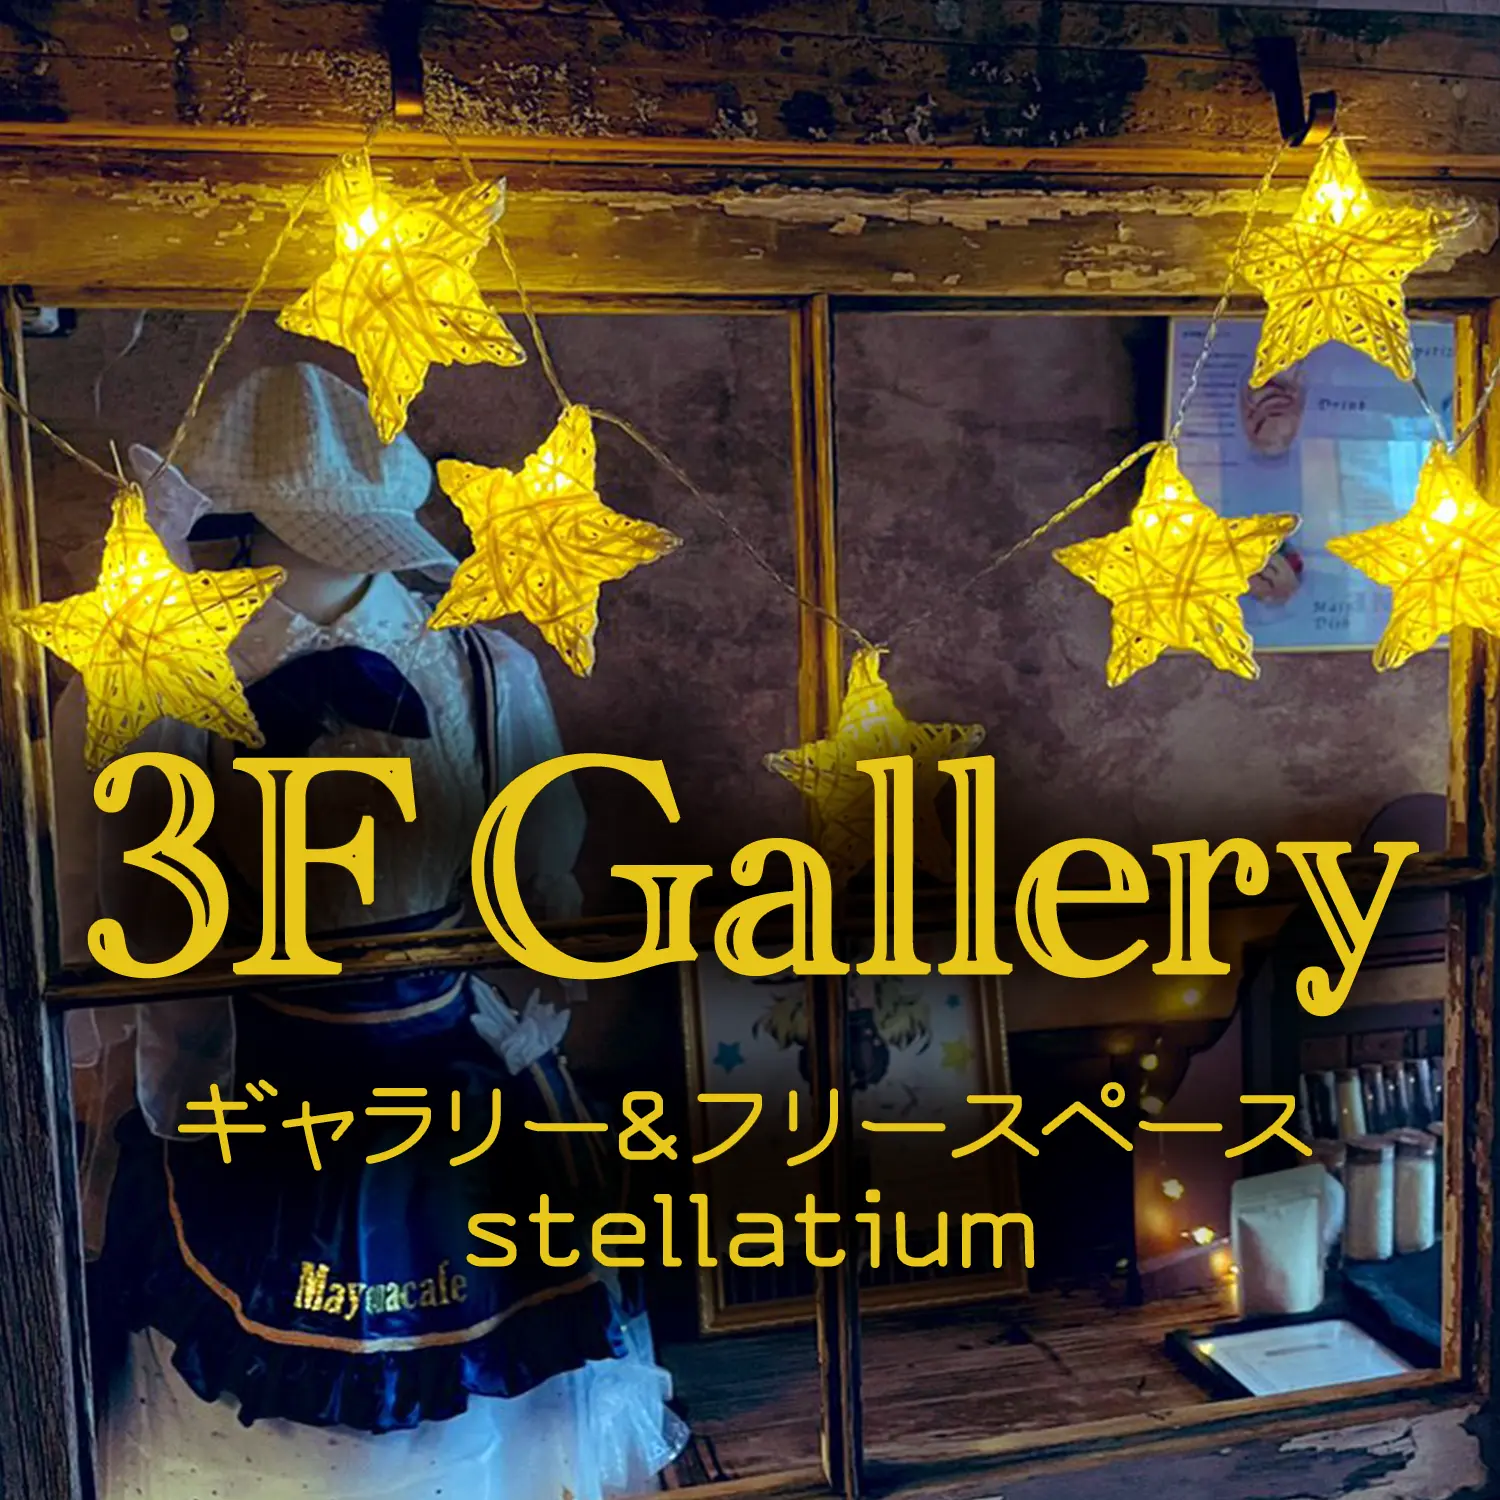 3F stellatium